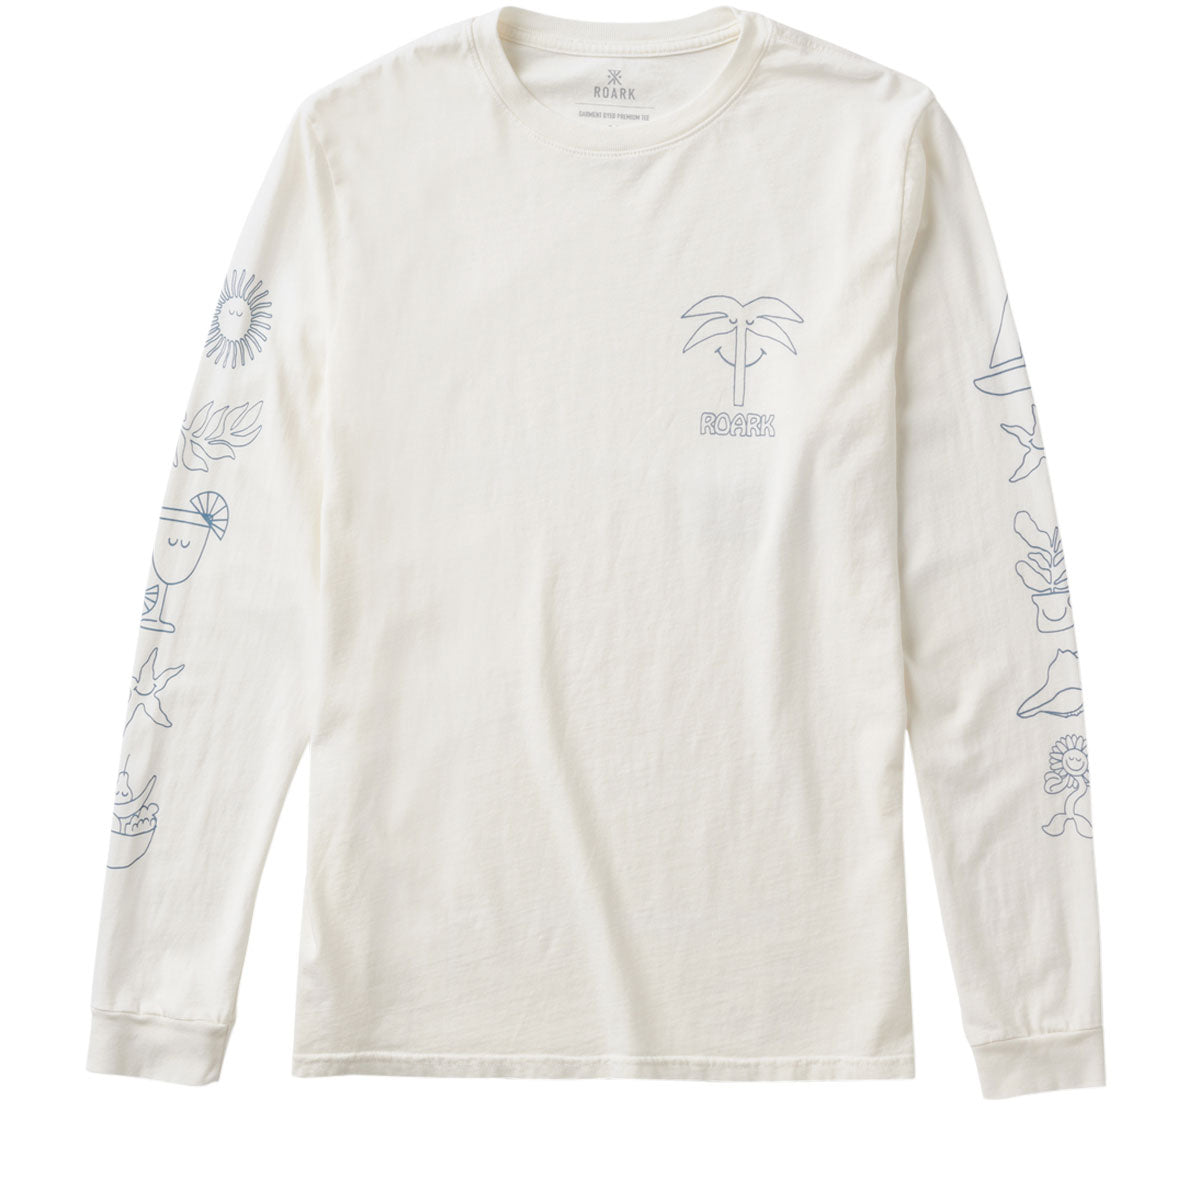 Roark Sole Splendente Long Sleeve T-Shirt - Off White image 1